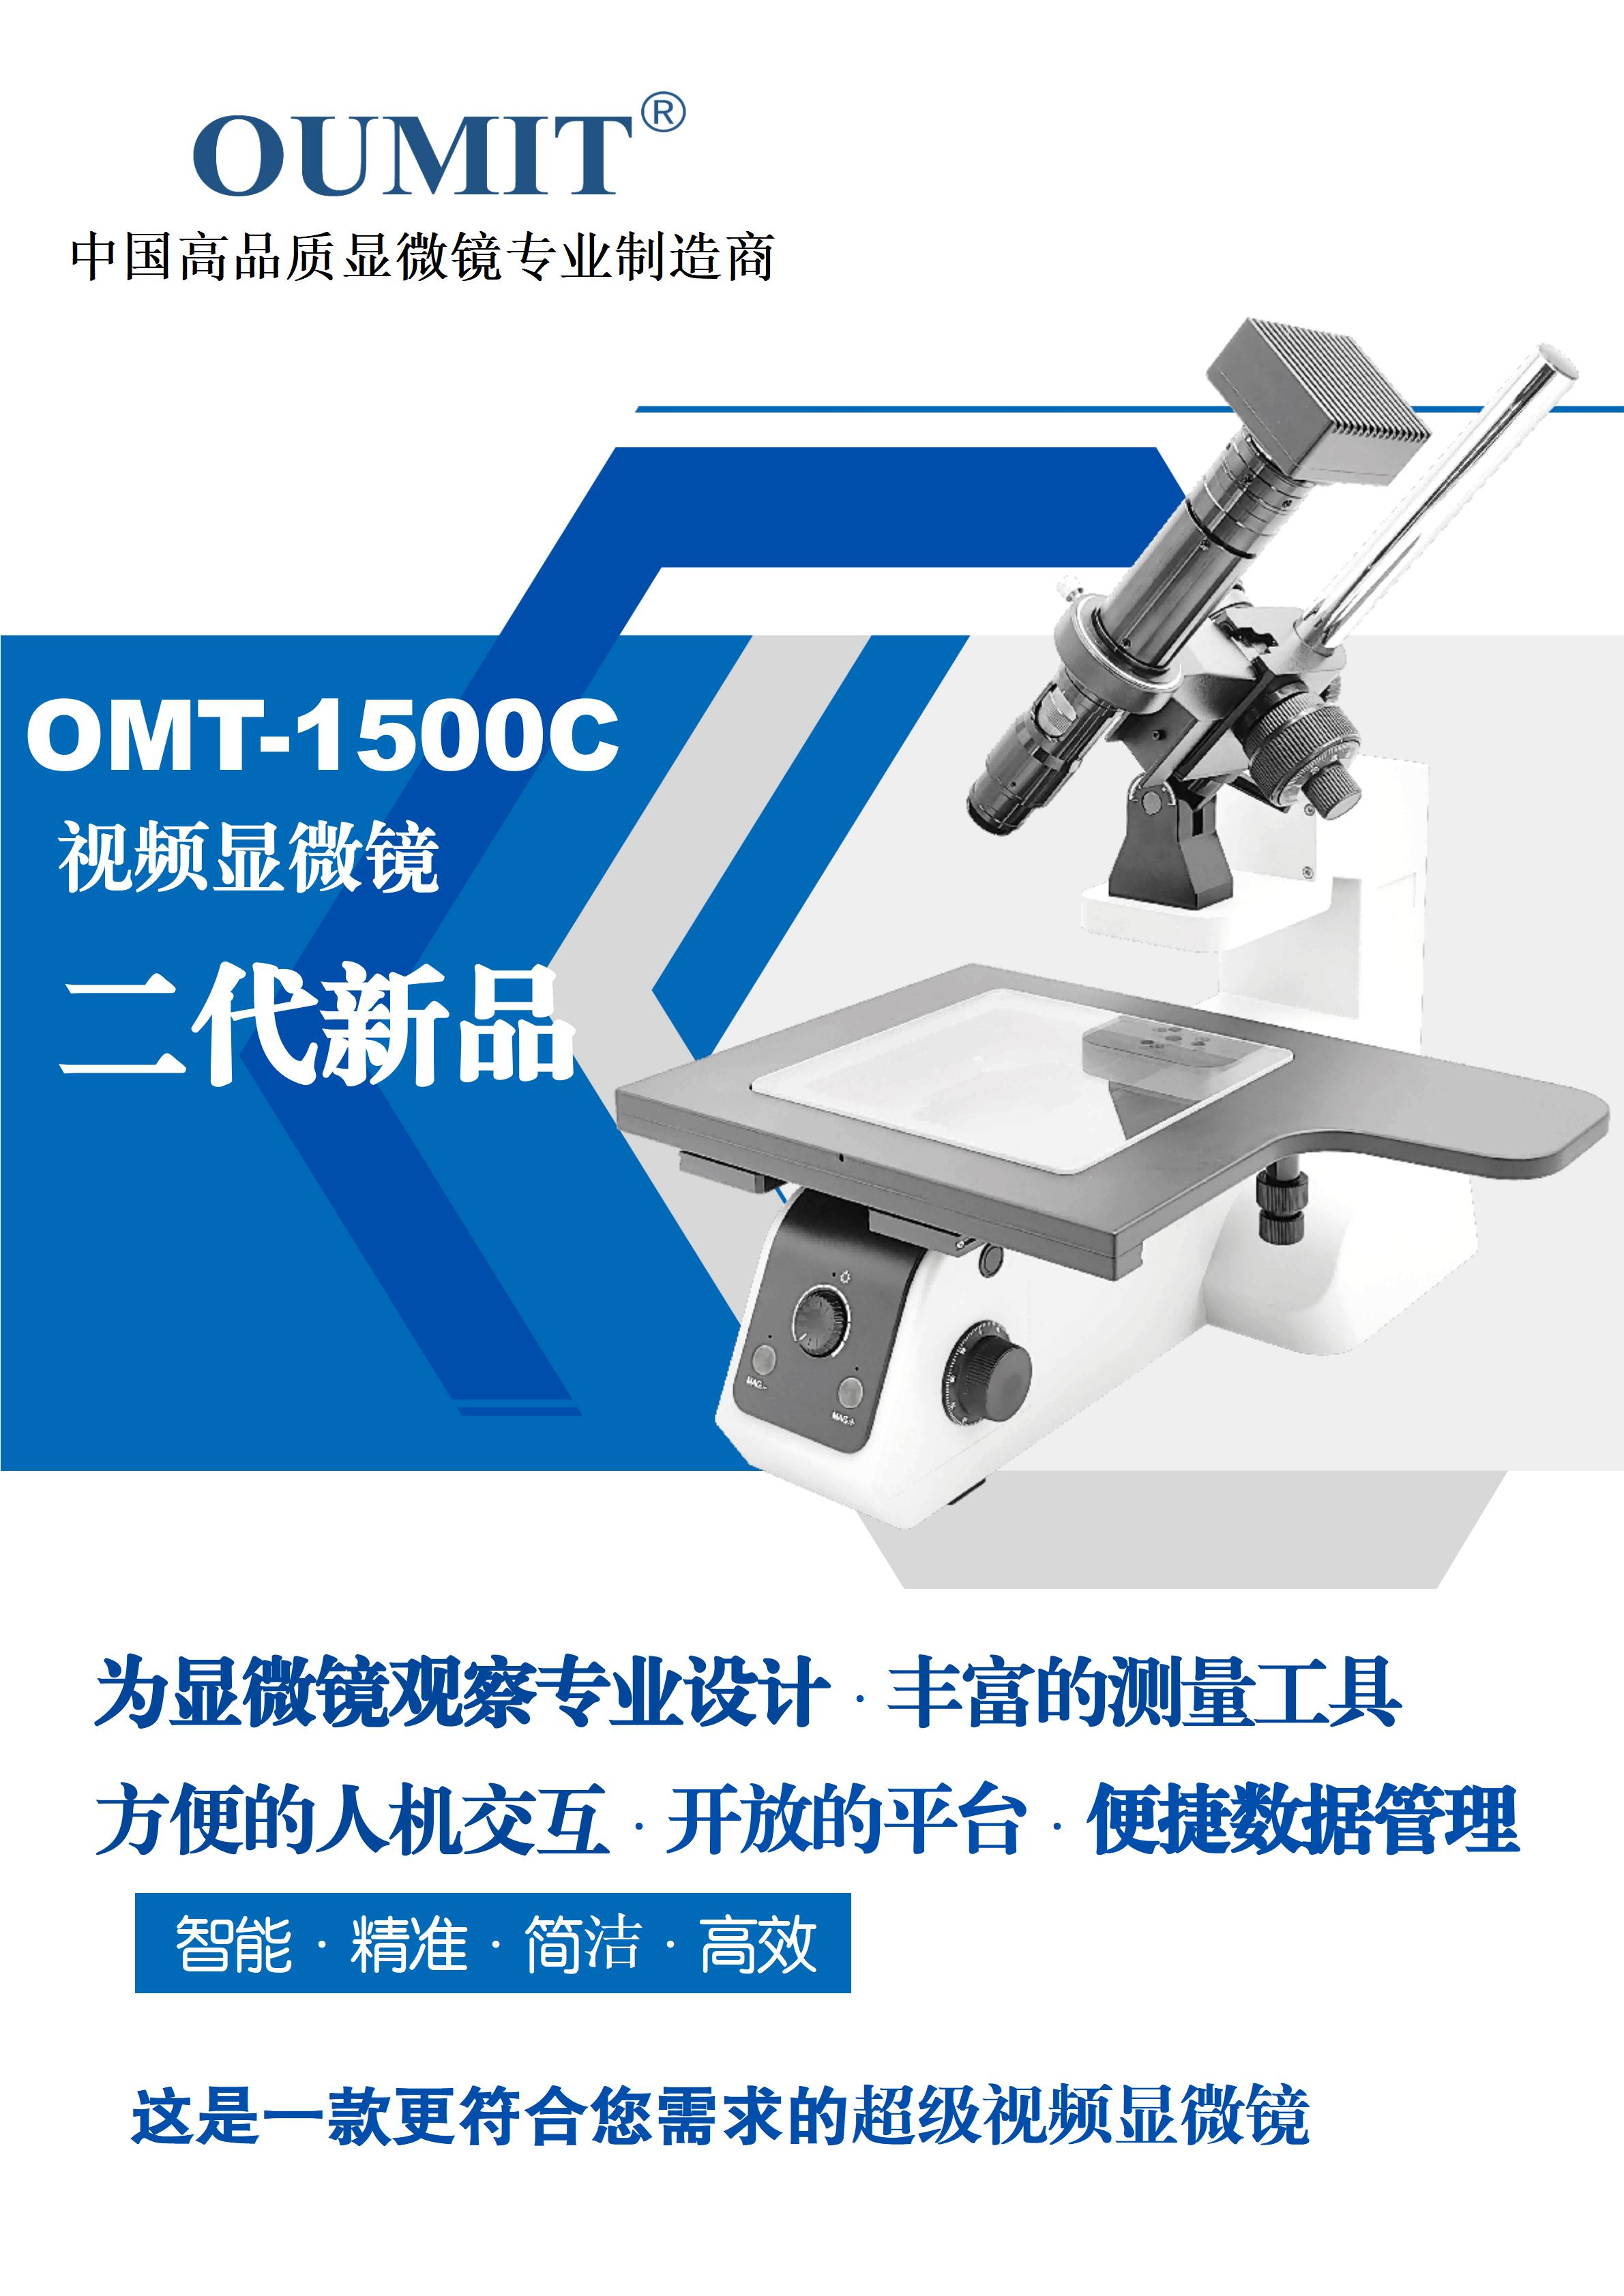 OMT-1500C超级视频常州测量显微镜-2023_01.jpg